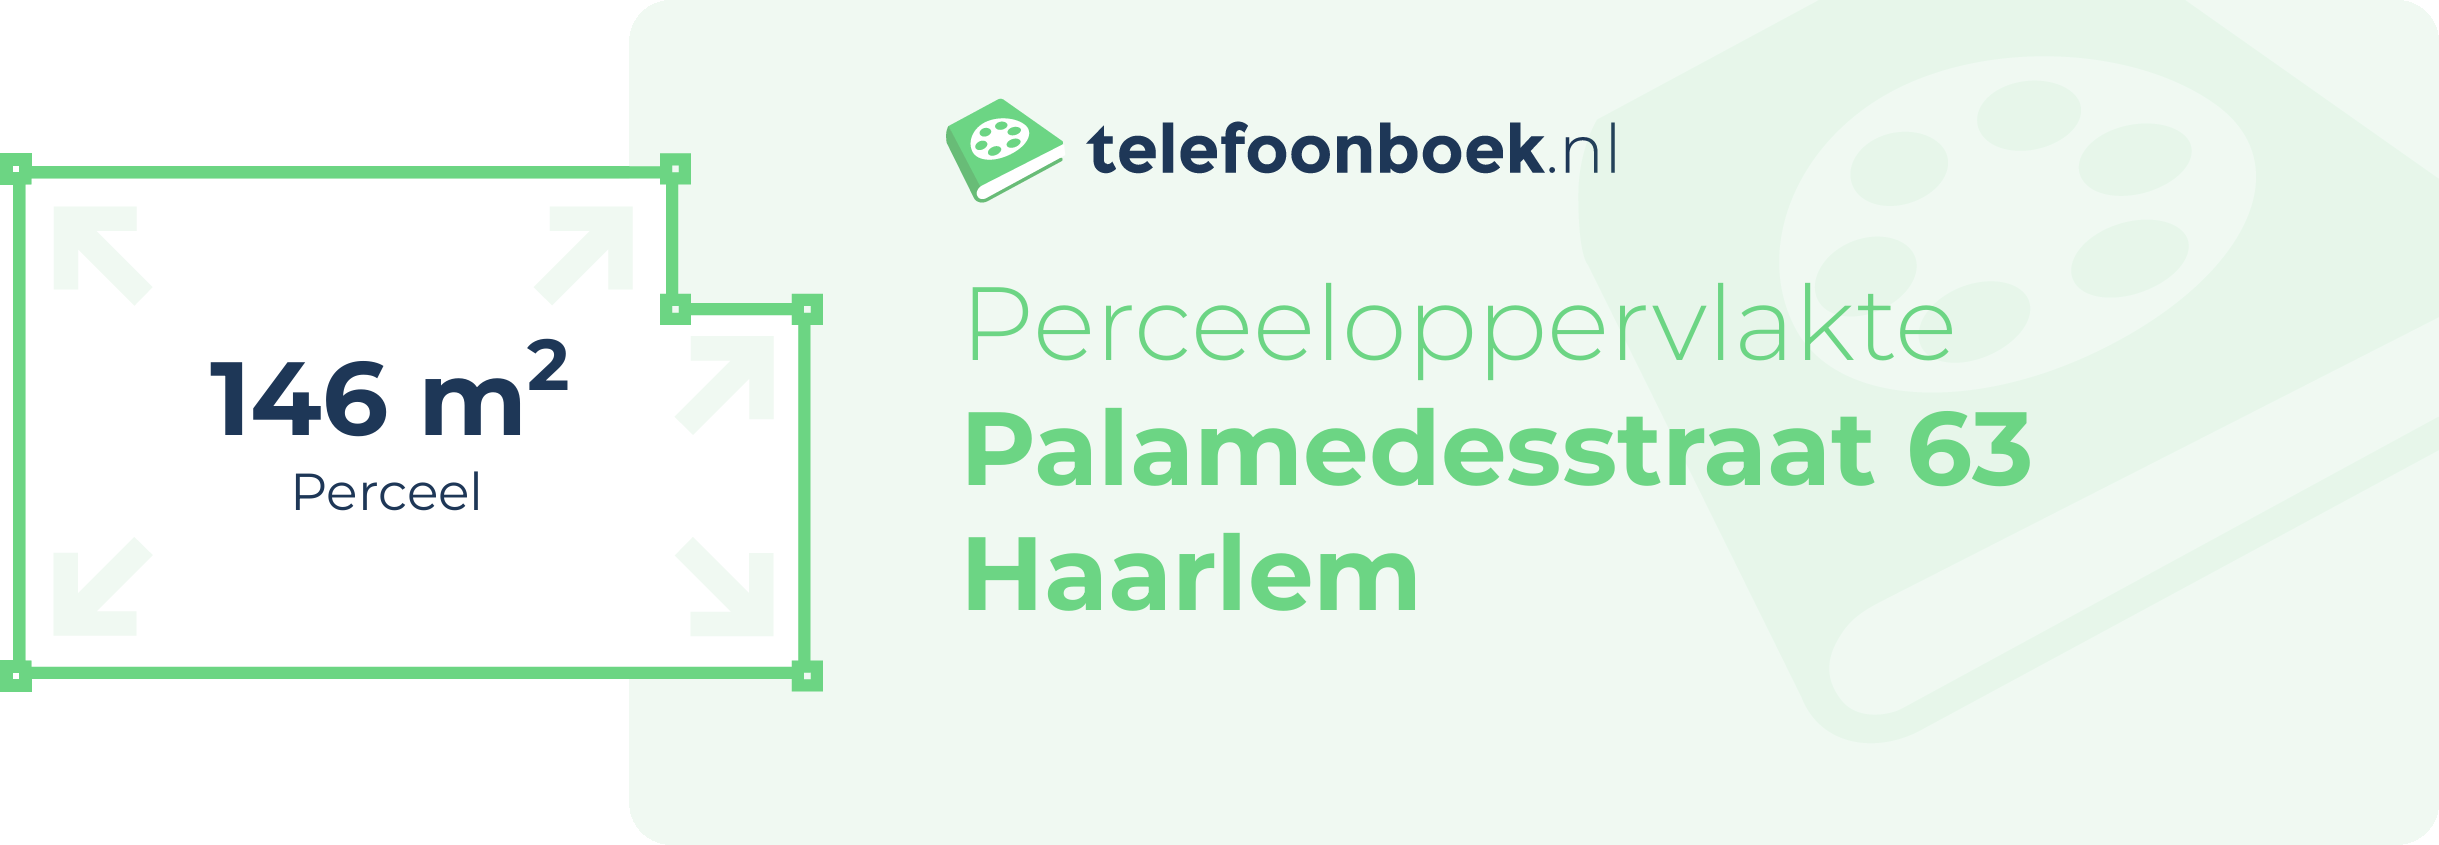 Perceeloppervlakte Palamedesstraat 63 Haarlem